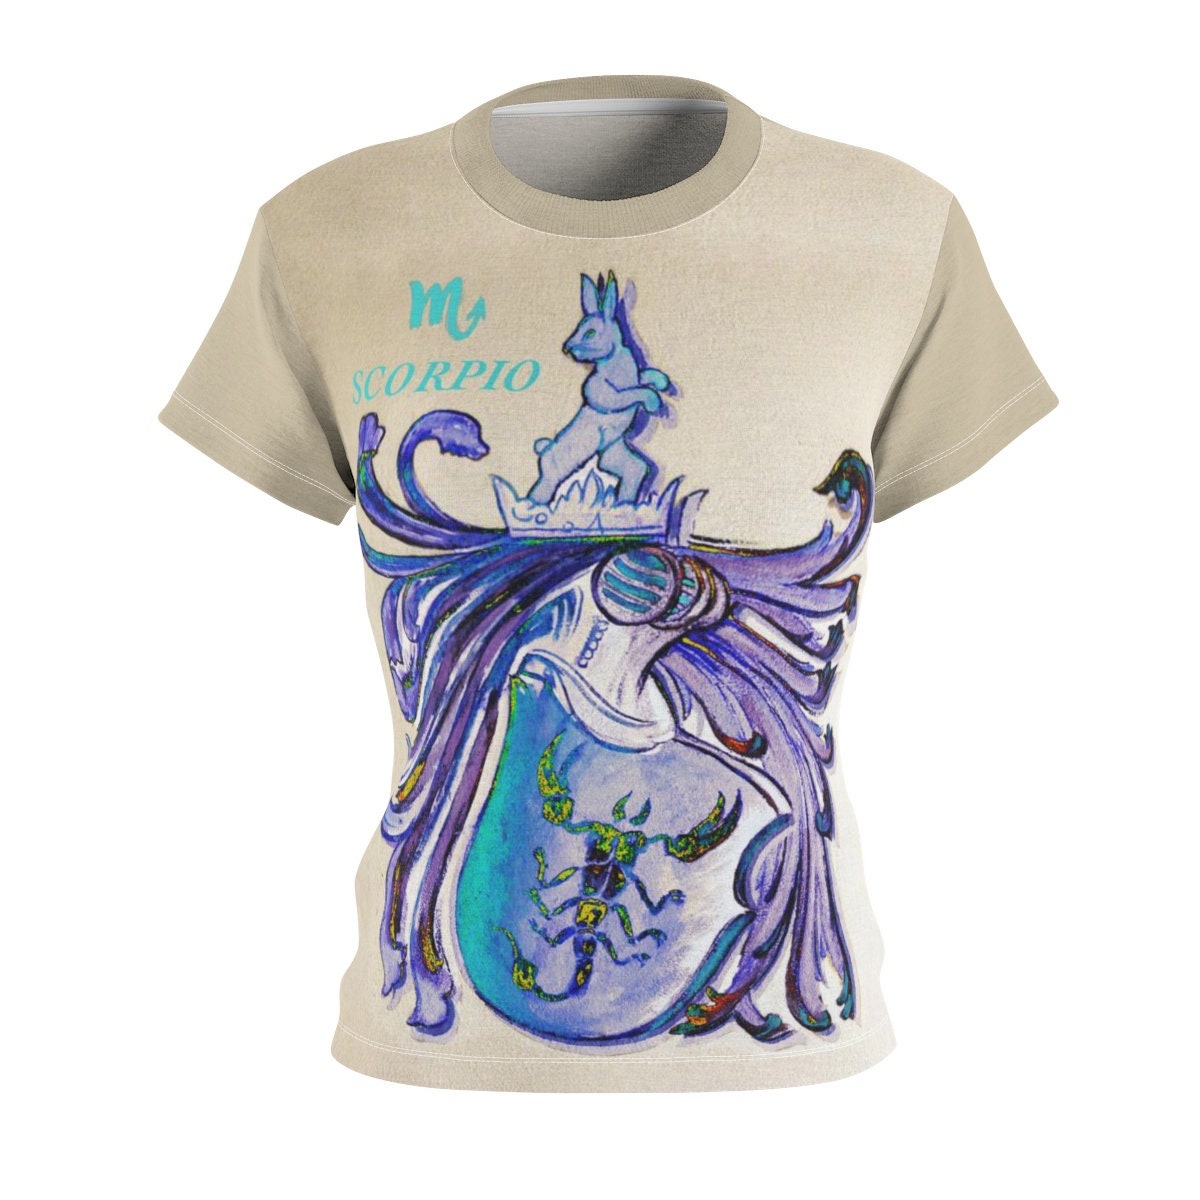 Scorpio / Astrology / Women / Zodiac / T-shirt / Tee / Shirt / Vintage / Art / Valentine / Birthday / Clothing / Gift for Her - Chloe Lambertin